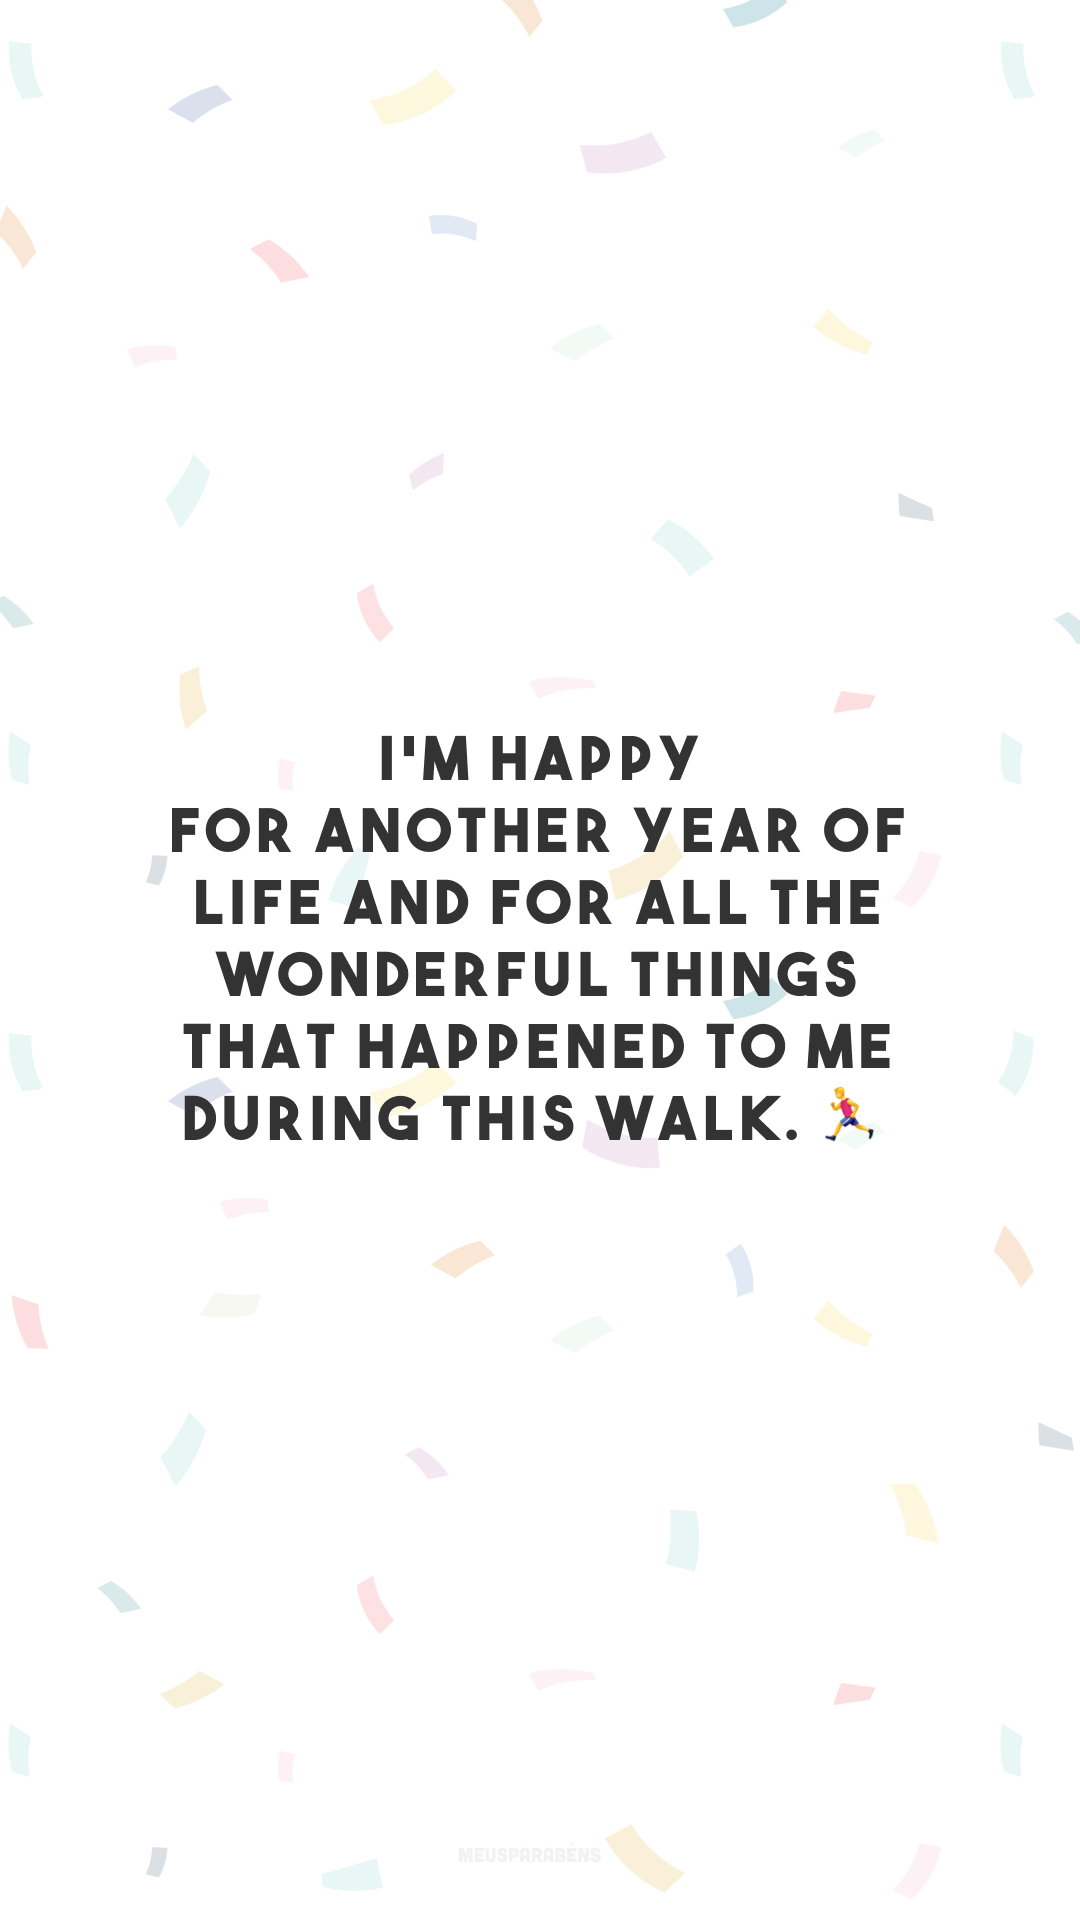 I'm happy for another year of life and for all the wonderful things that happened to me during this walk. 🏃‍♂️

<p>(Feliz por mais um ano de vida e por todas as coisas maravilhosas que aconteceram comigo durante essa caminhada.)<p>